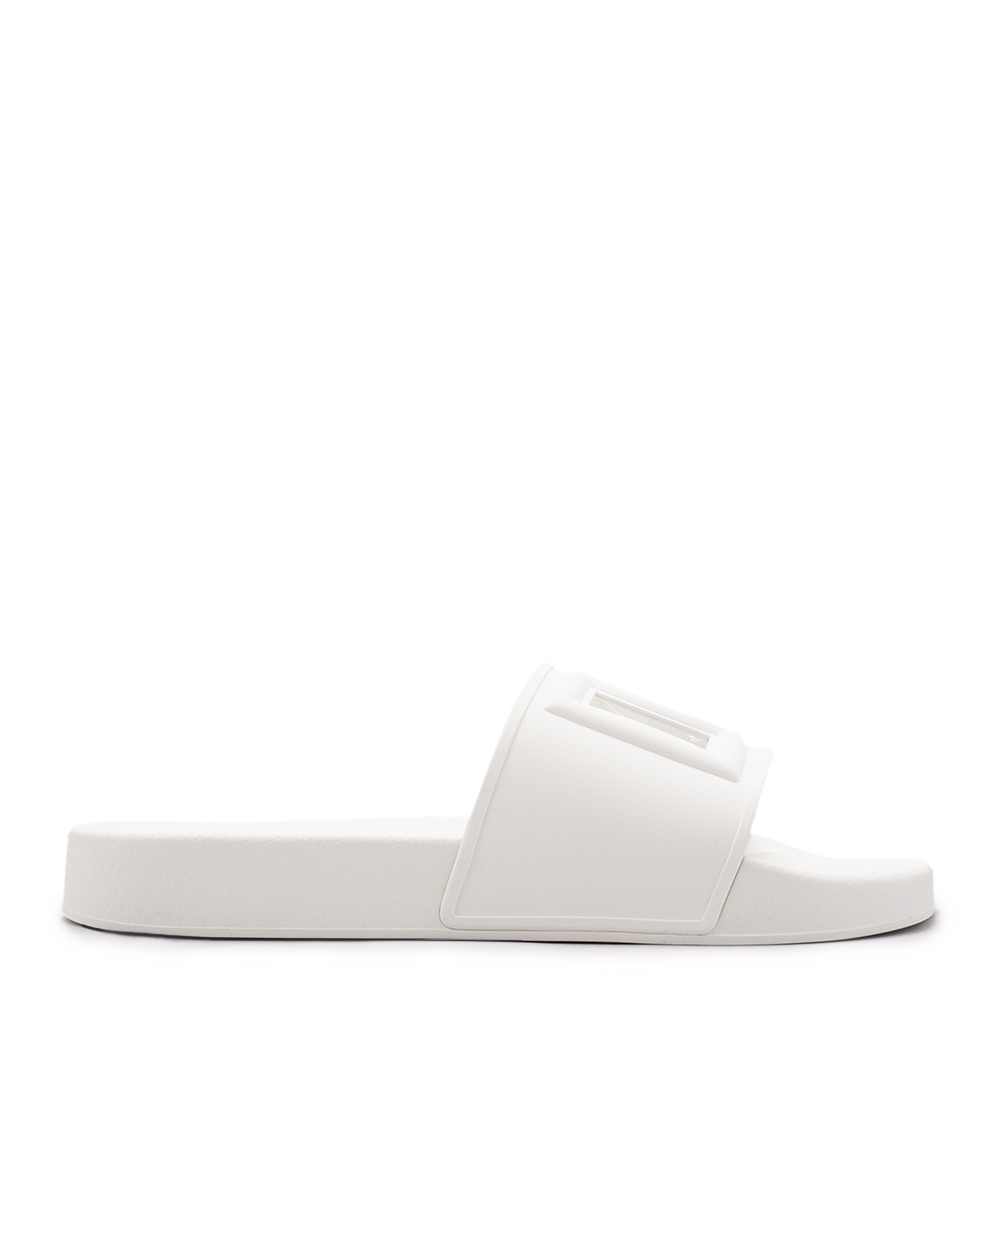 Слайдеры Dolce&Gabbana CW2079-AO666, белый цвет • Купить в интернет-магазине Kameron